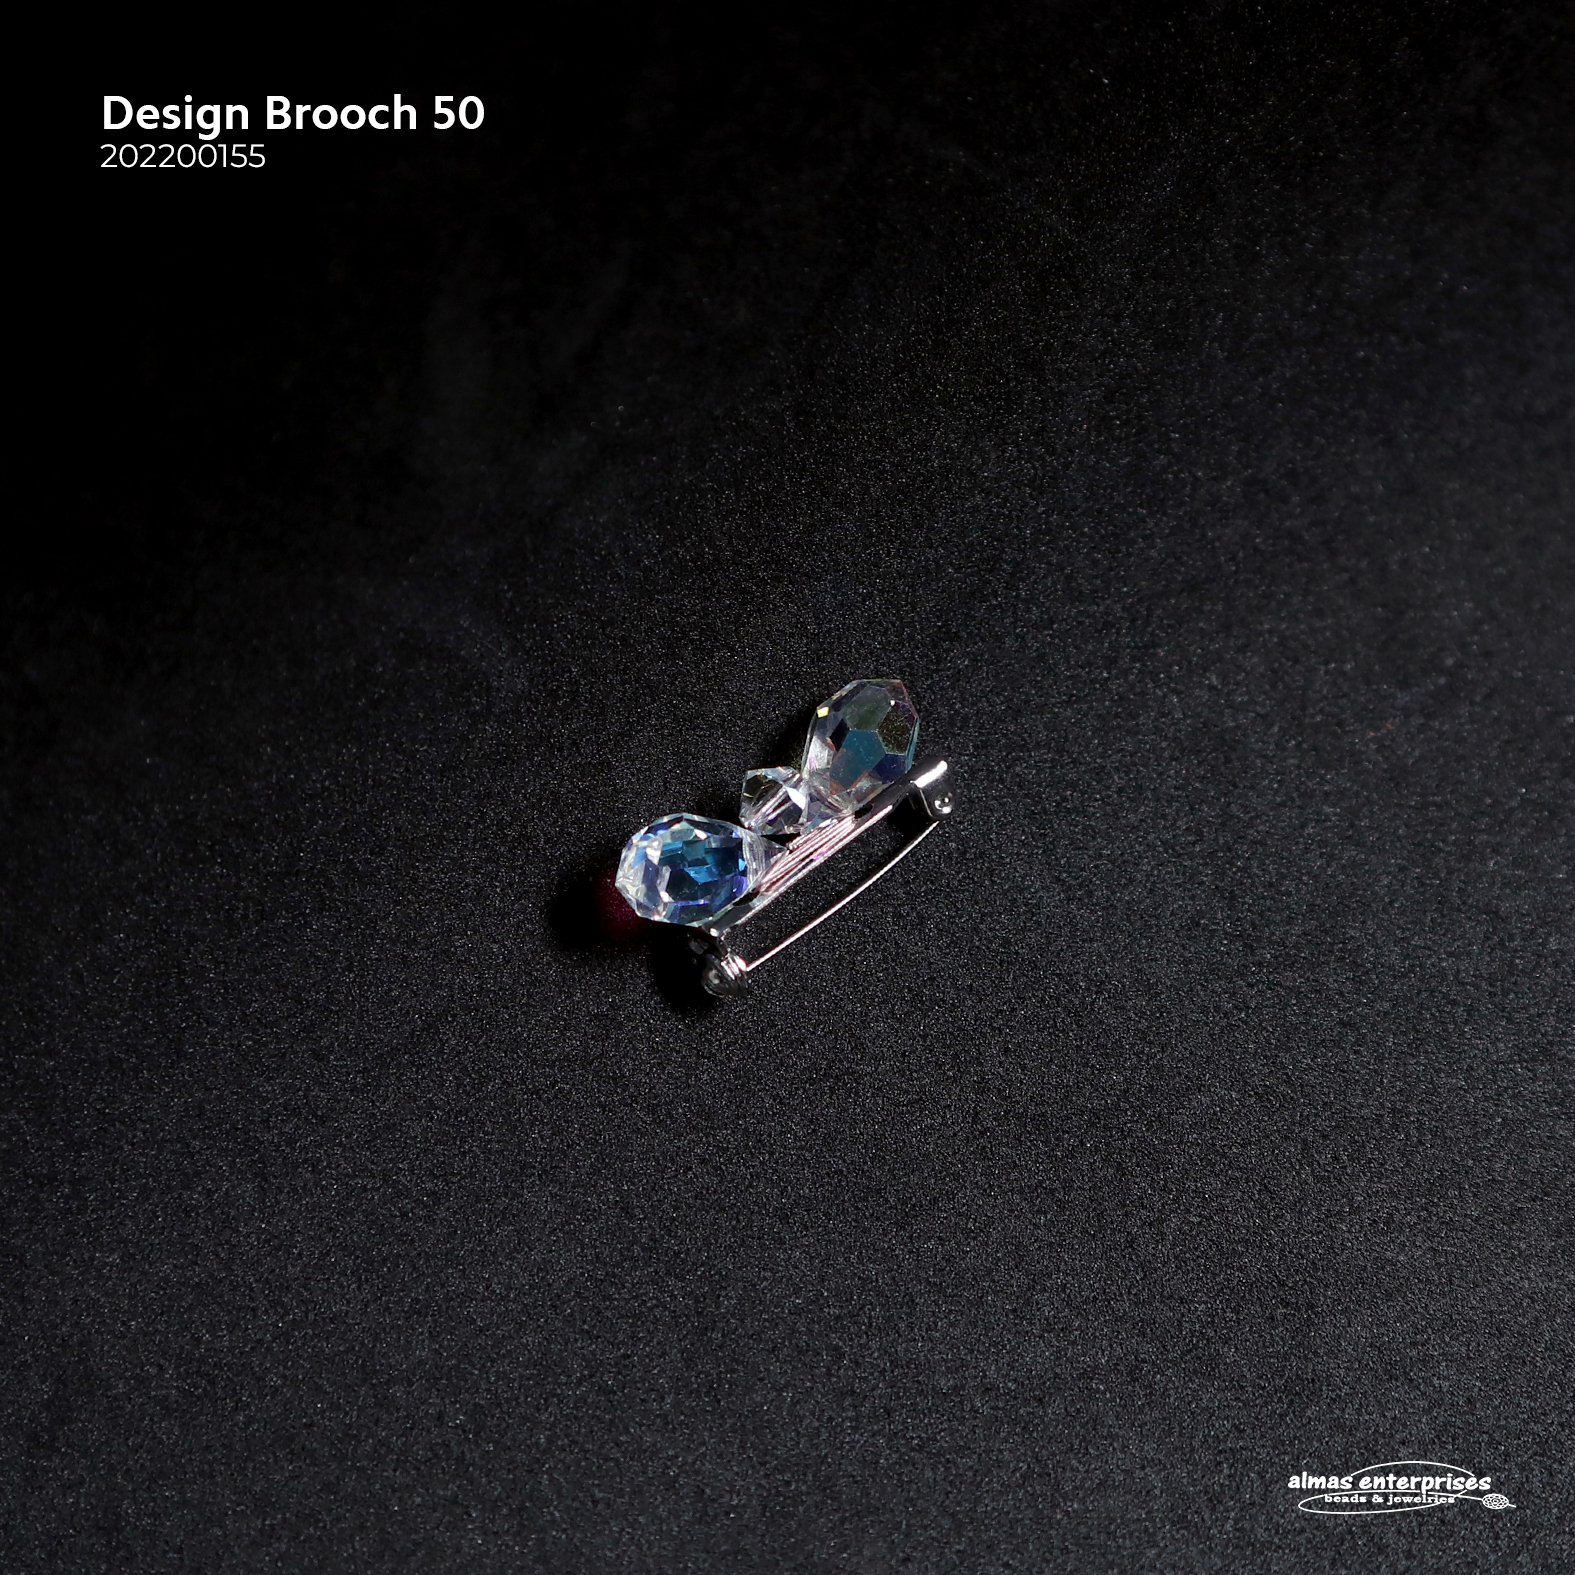 Design Brooch 50